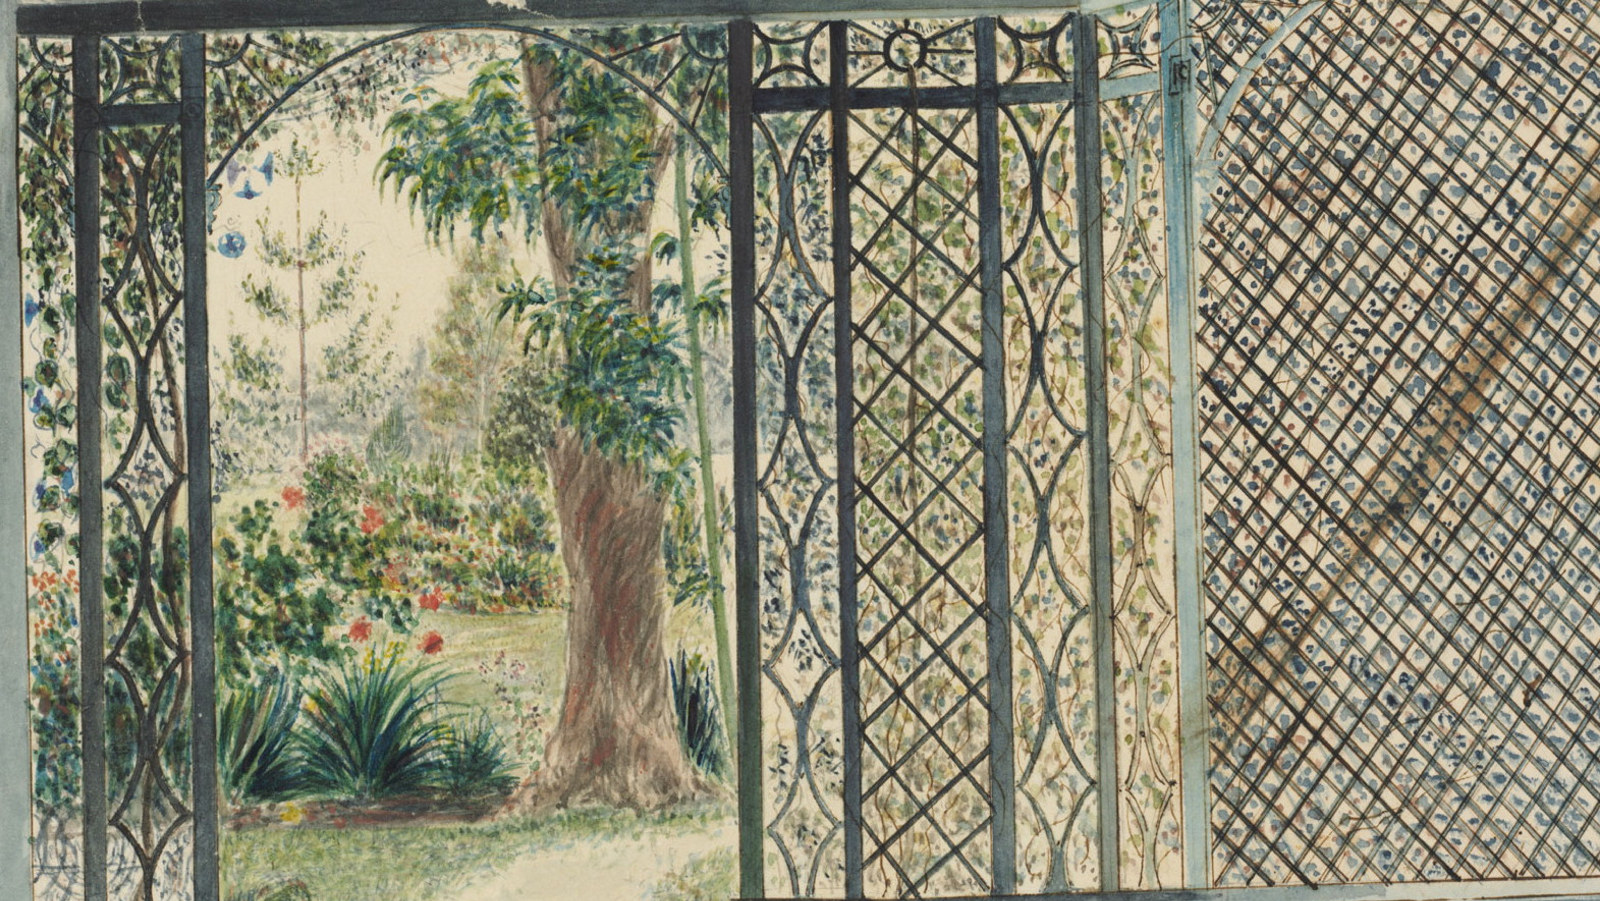 Watercolour of trellised verandah and house from garden.